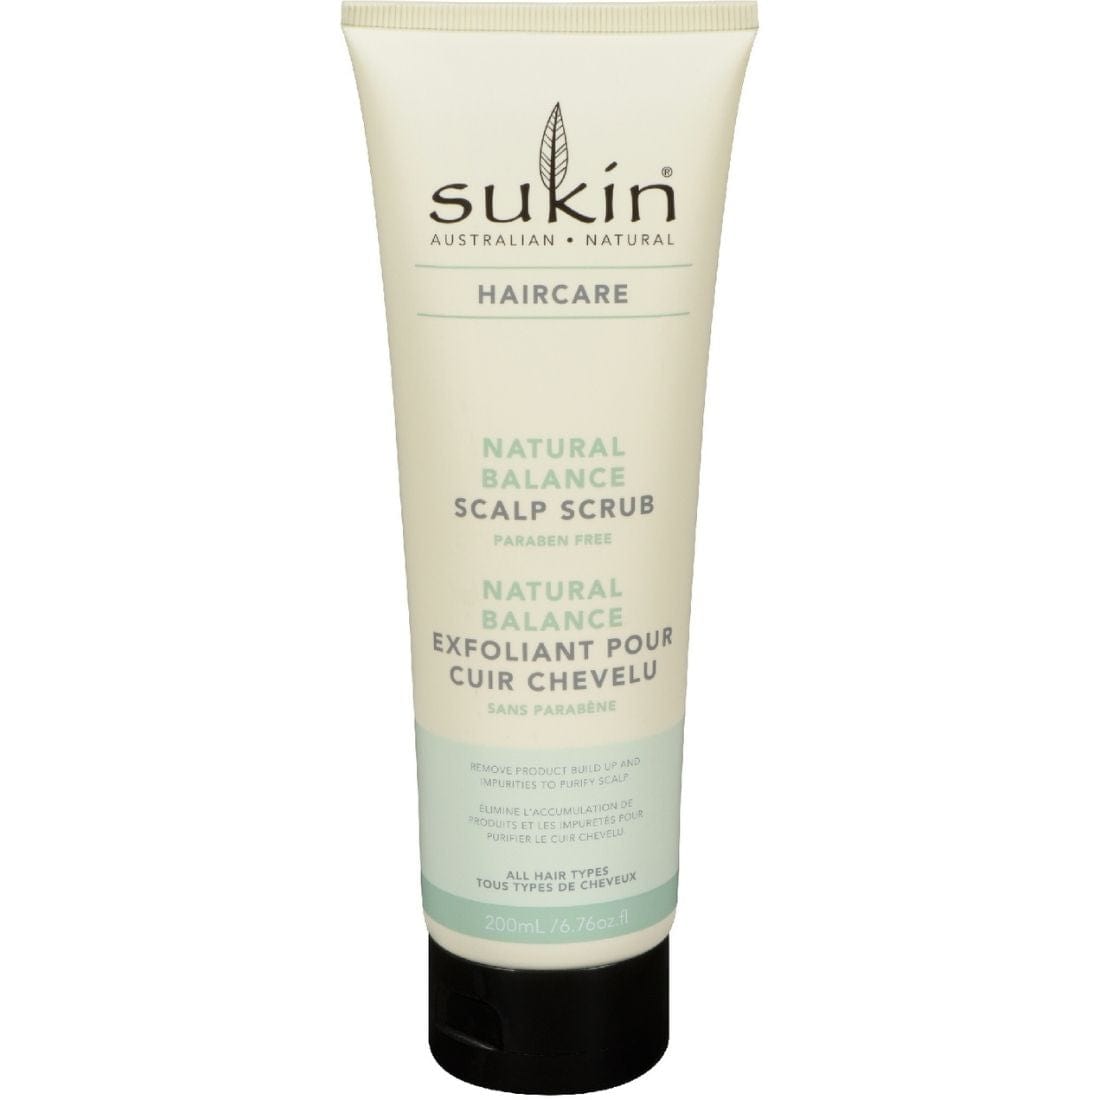 Sukin Natural Balance Scalp Scrub, 200 ml, Clearance 40% Off, Final Sale